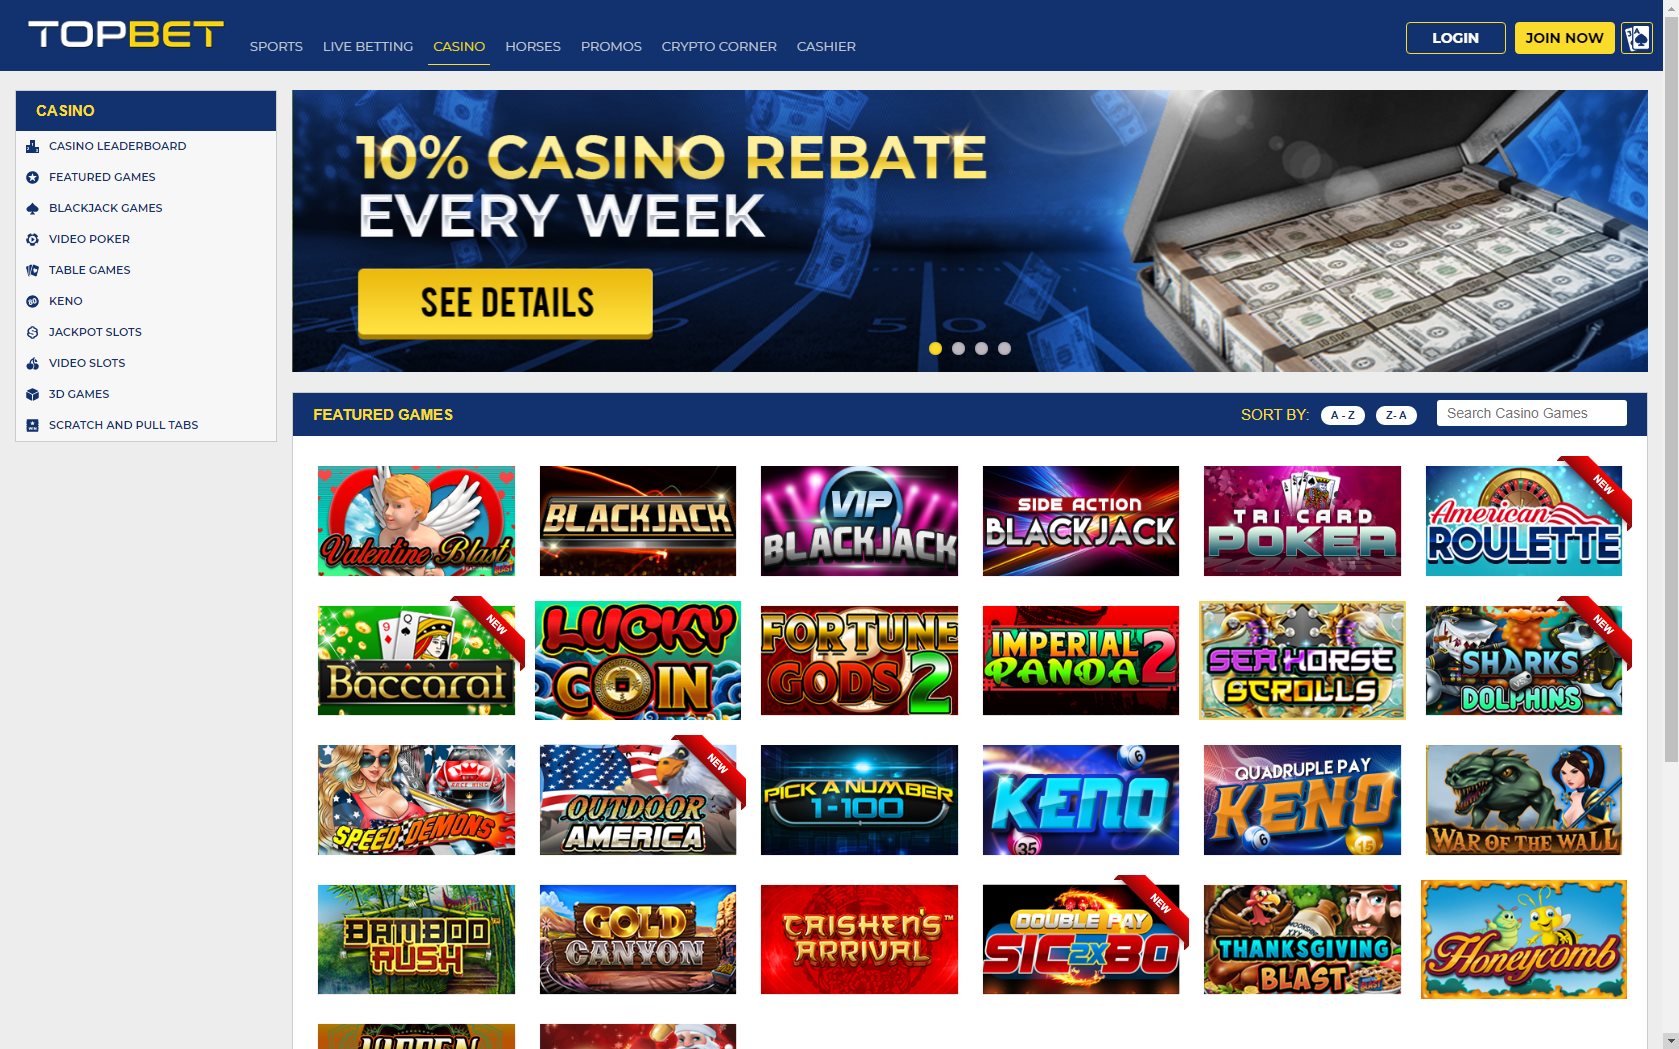 Top Bet Casino Games